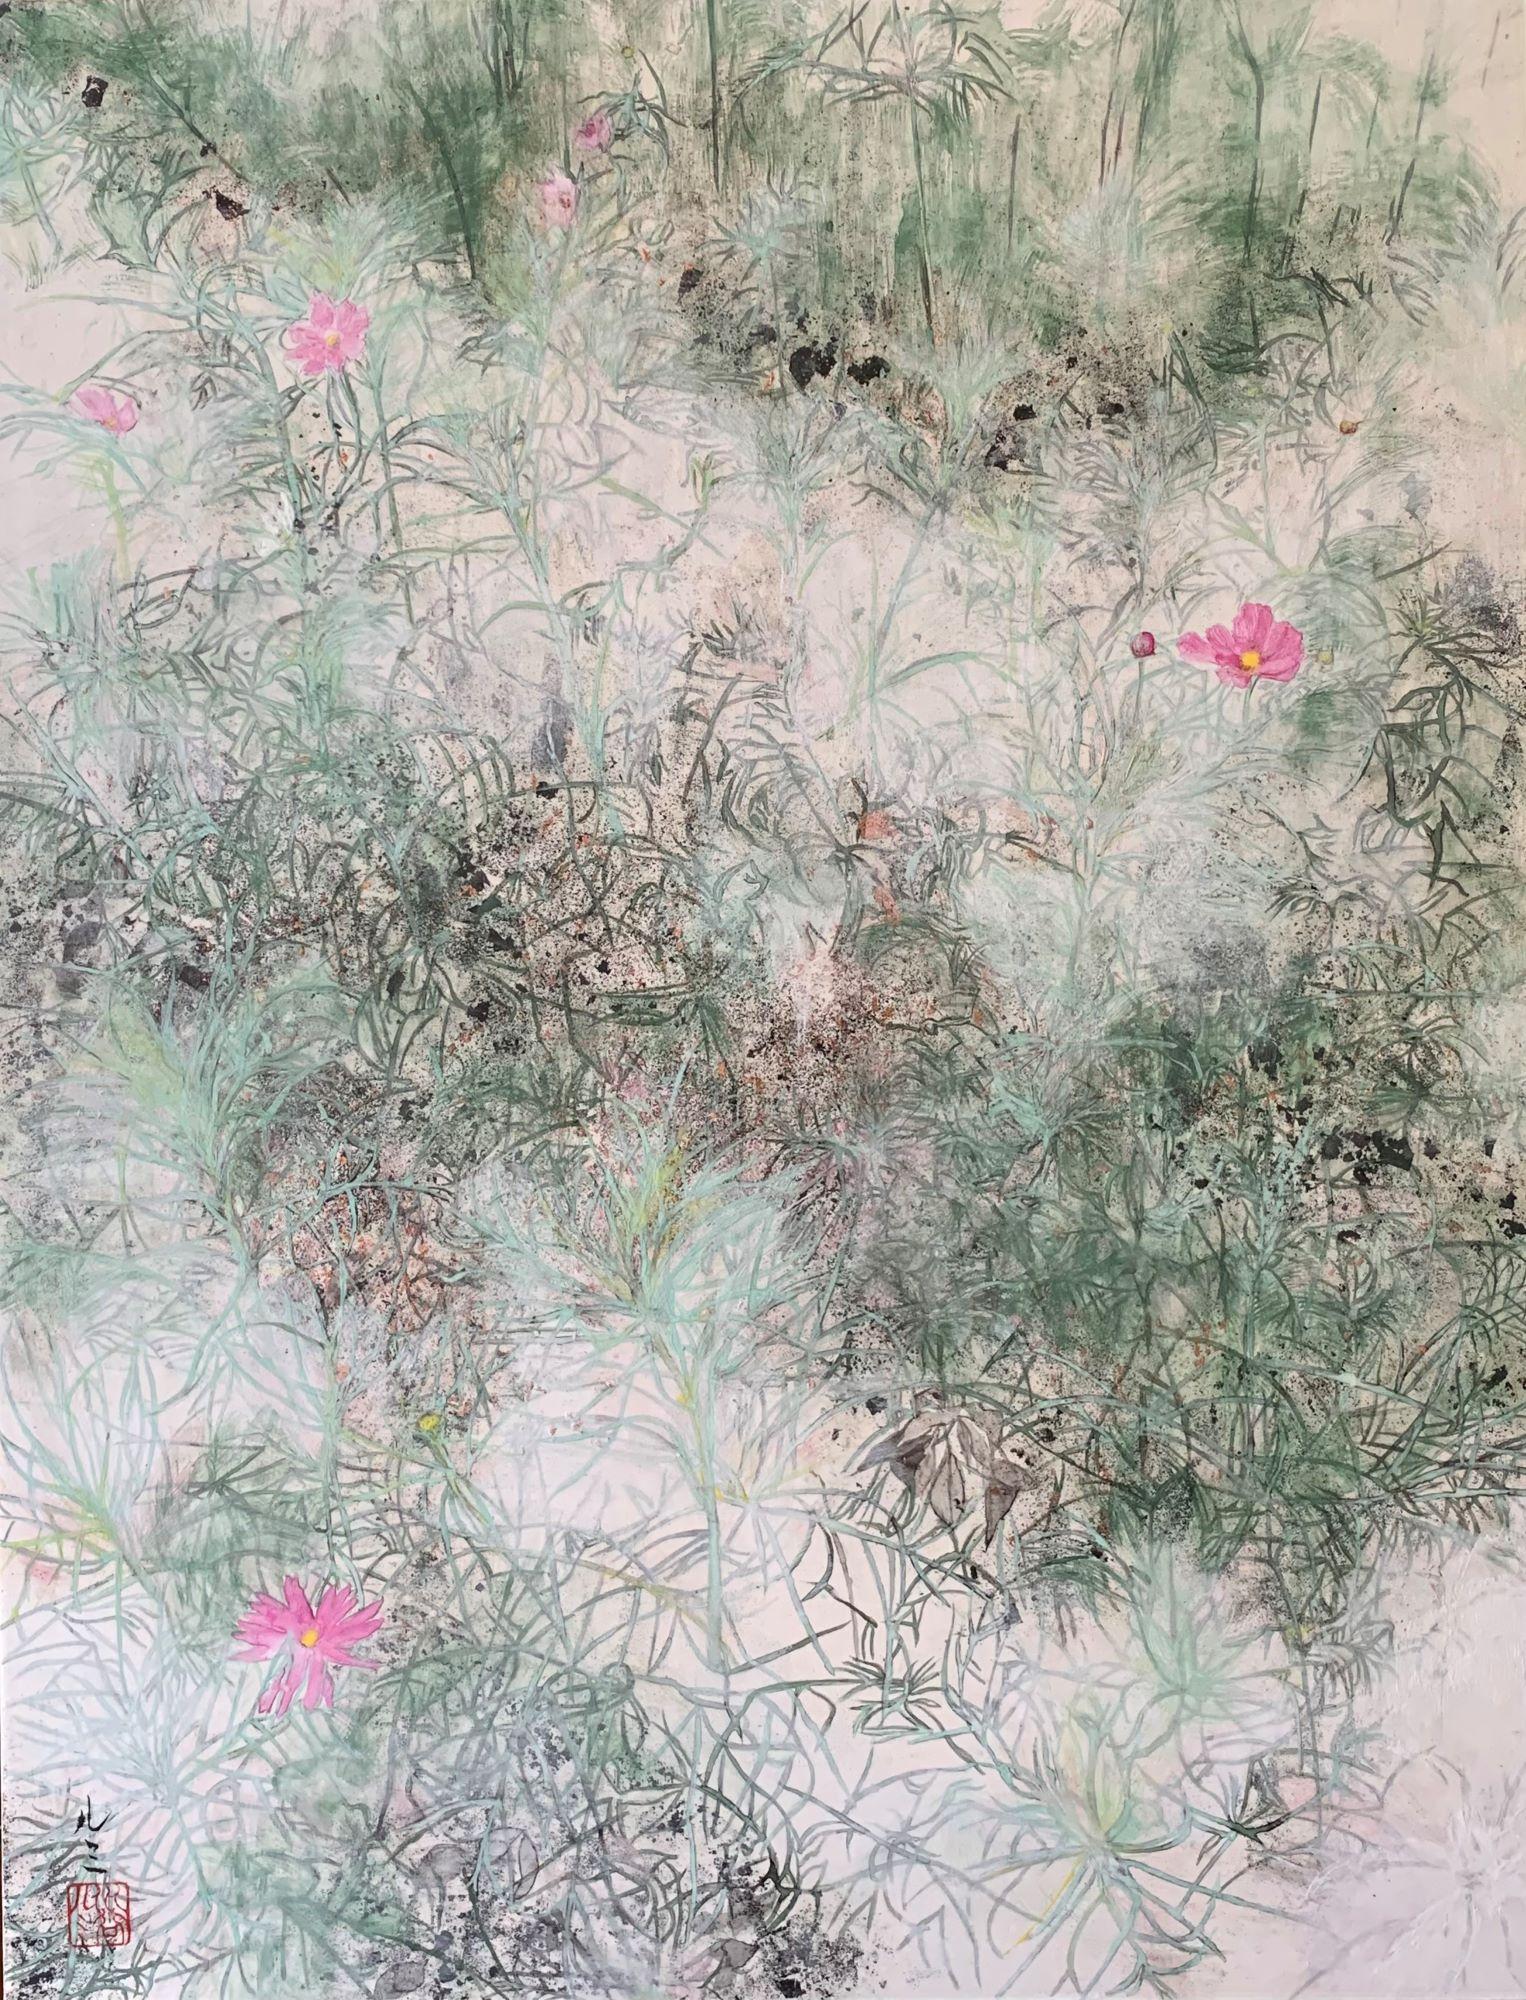 Cosmos II von Lumi Mizutani – Landschaftsgemälde im japanischen Stil, rosa Blumen